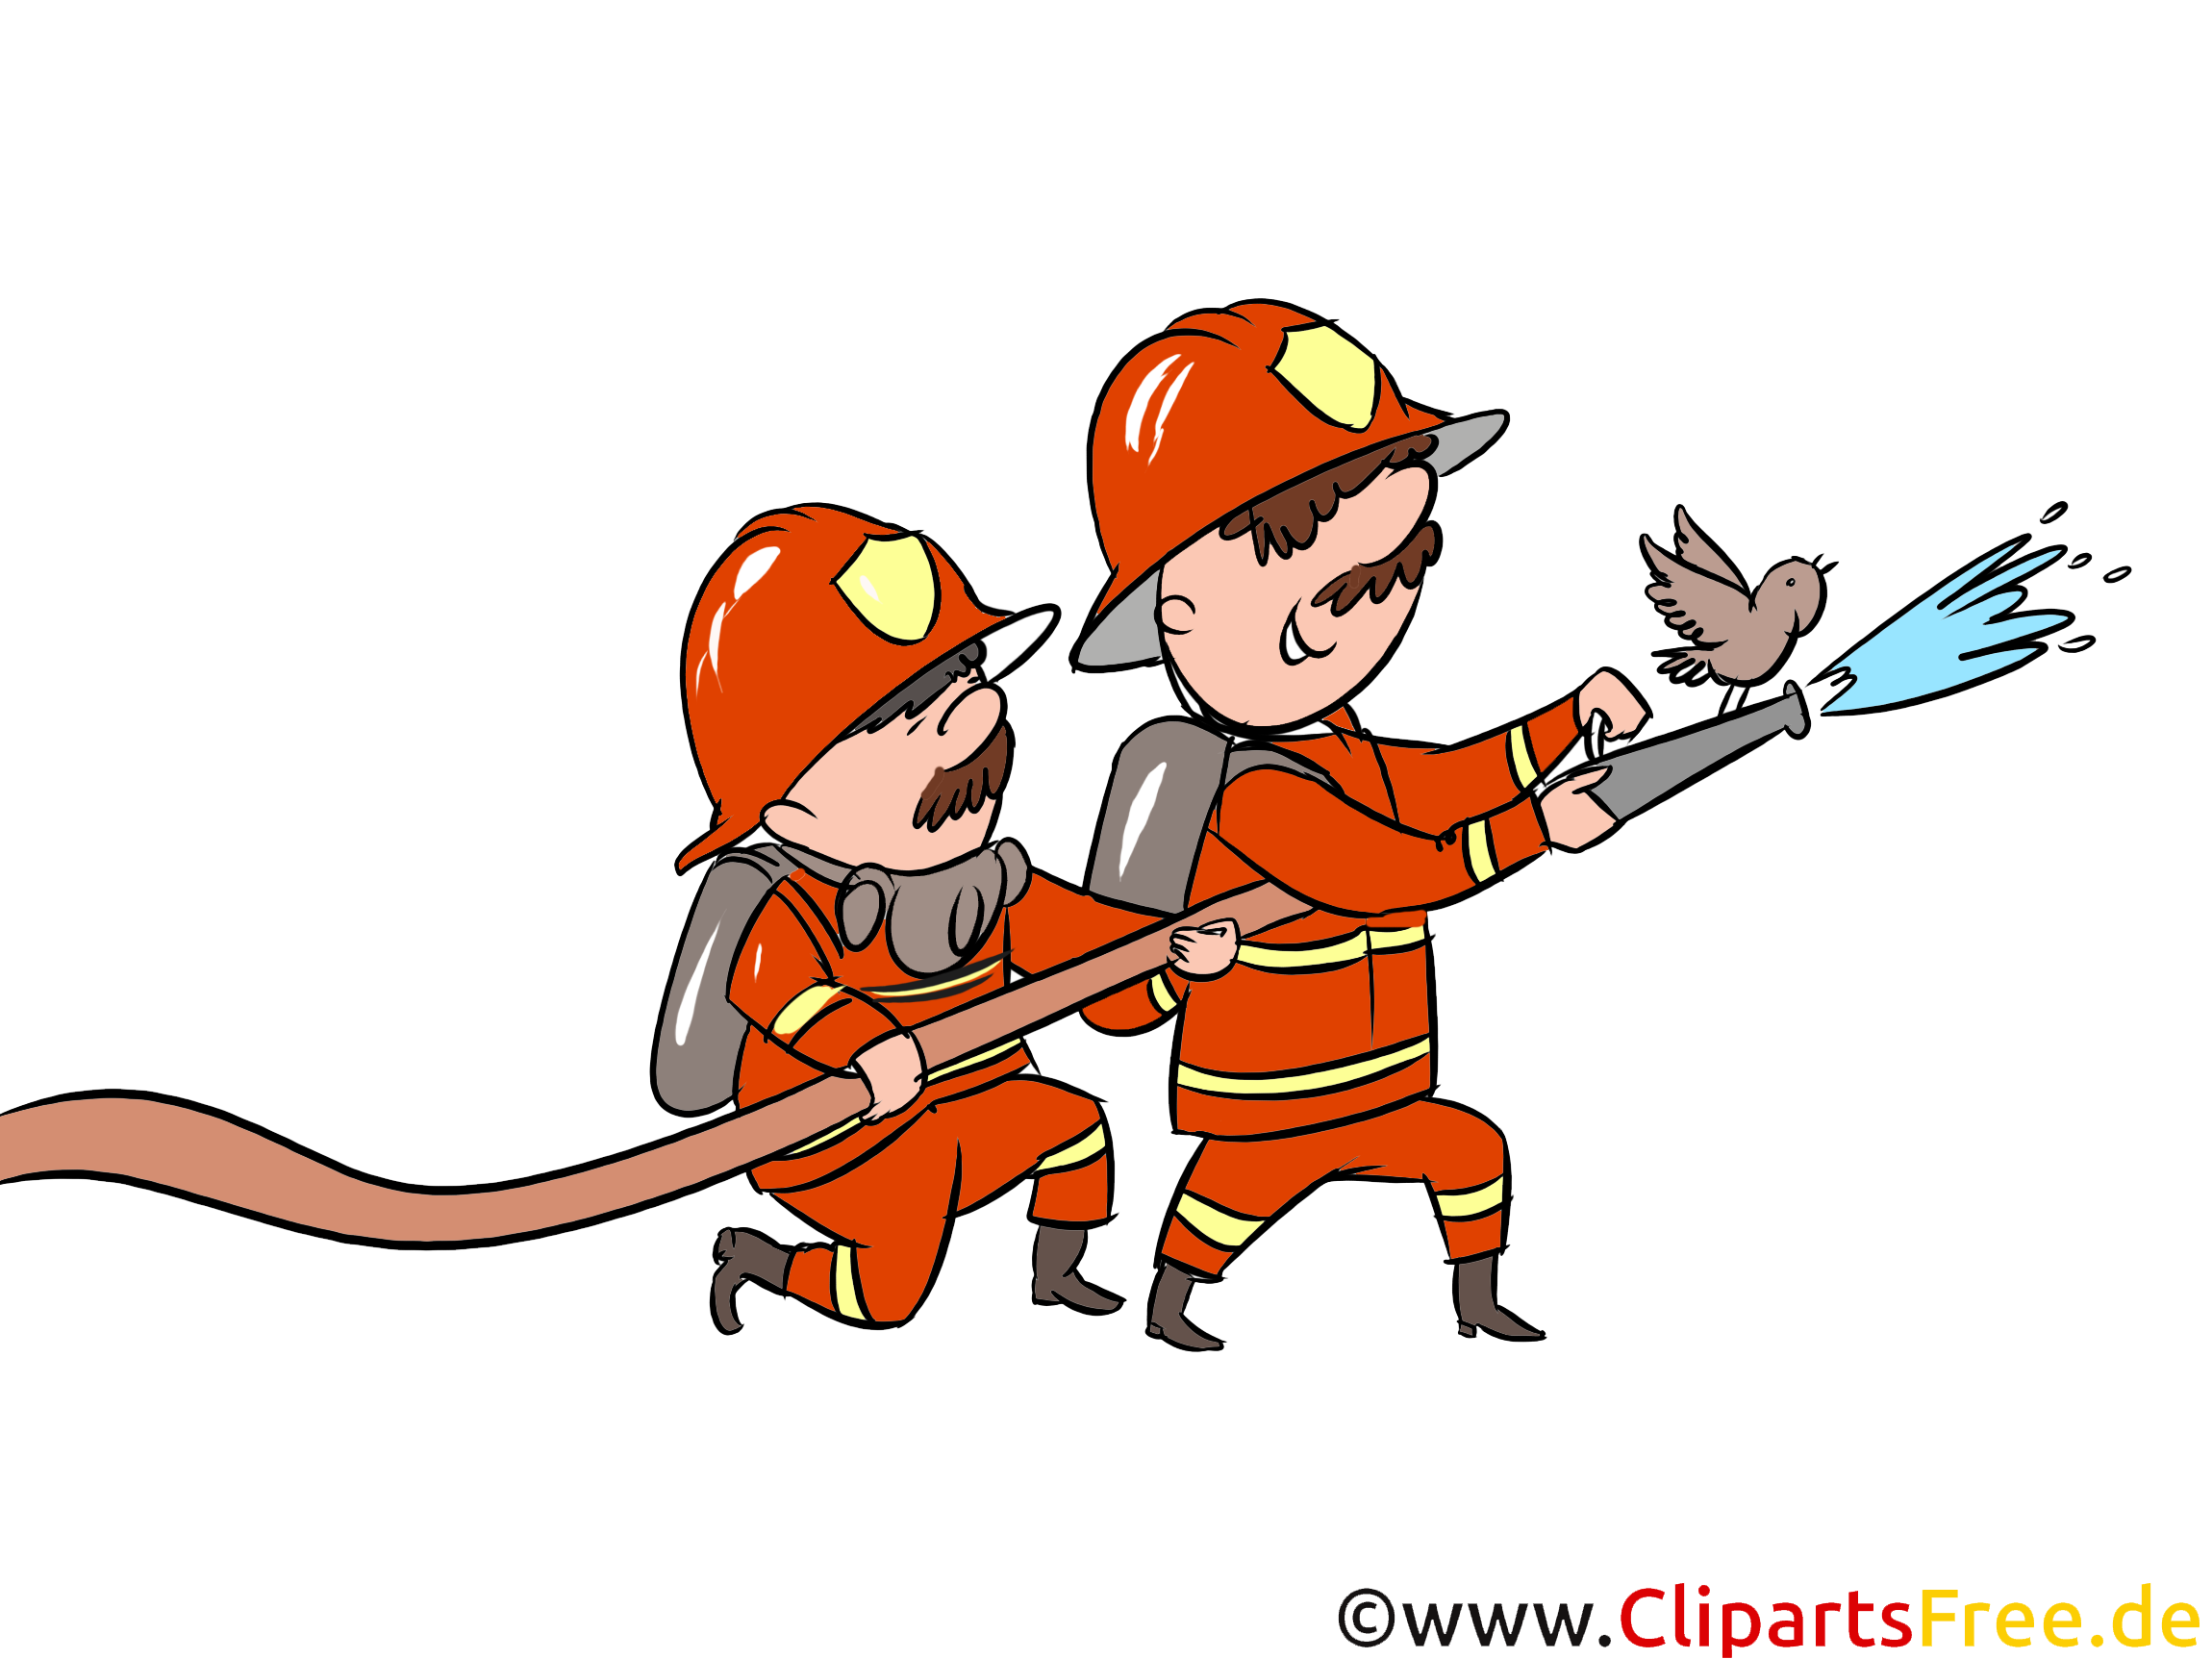 Feuerwehrmänner beim Löschen